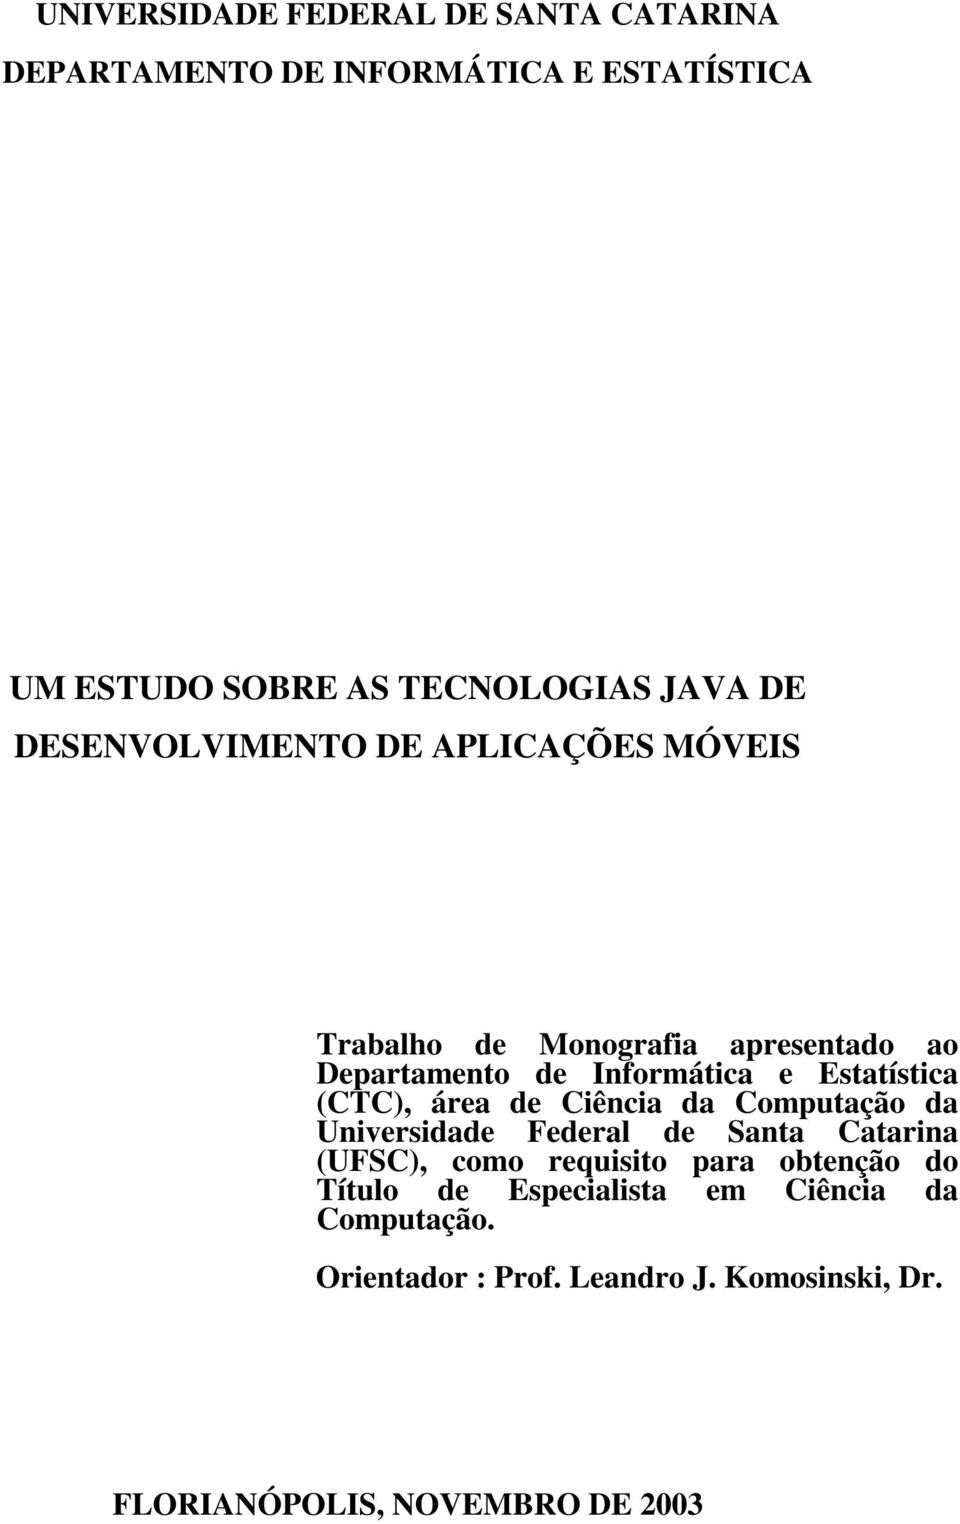 (CTC), área de Ciência da Computação da Universidade Federal de Santa Catarina (UFSC), como requisito para obtenção do